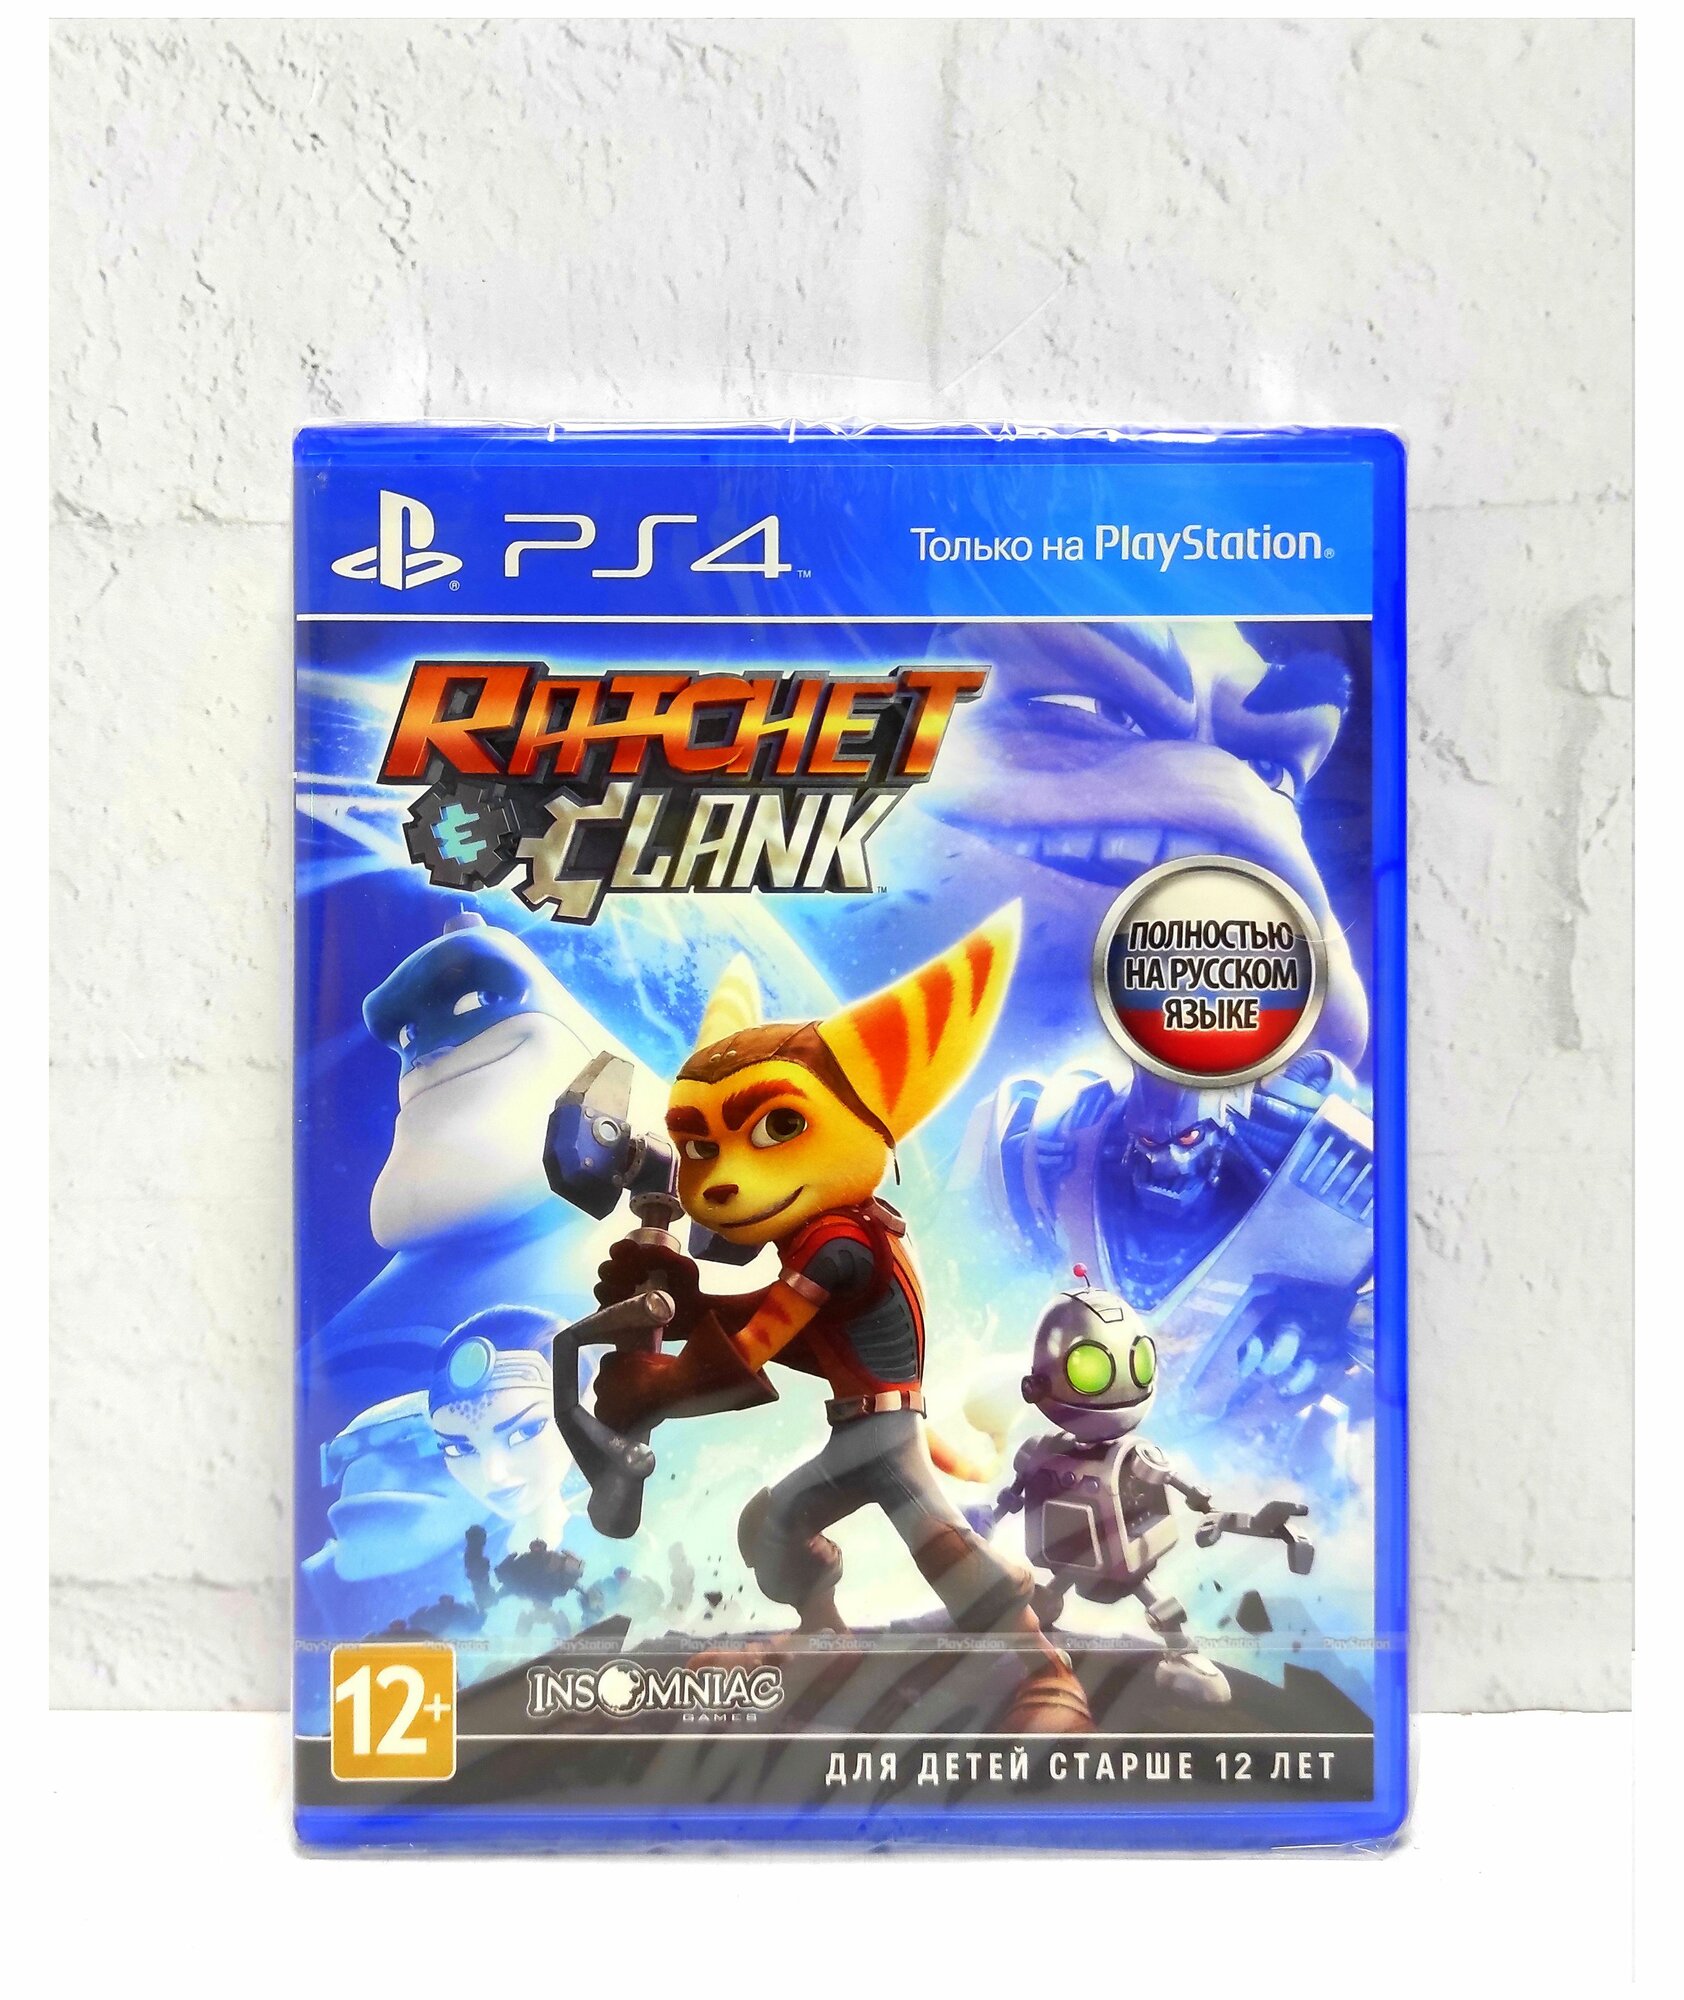 Видеоисгра для PS4 PS5 Ratchet and Clank полостью на русском